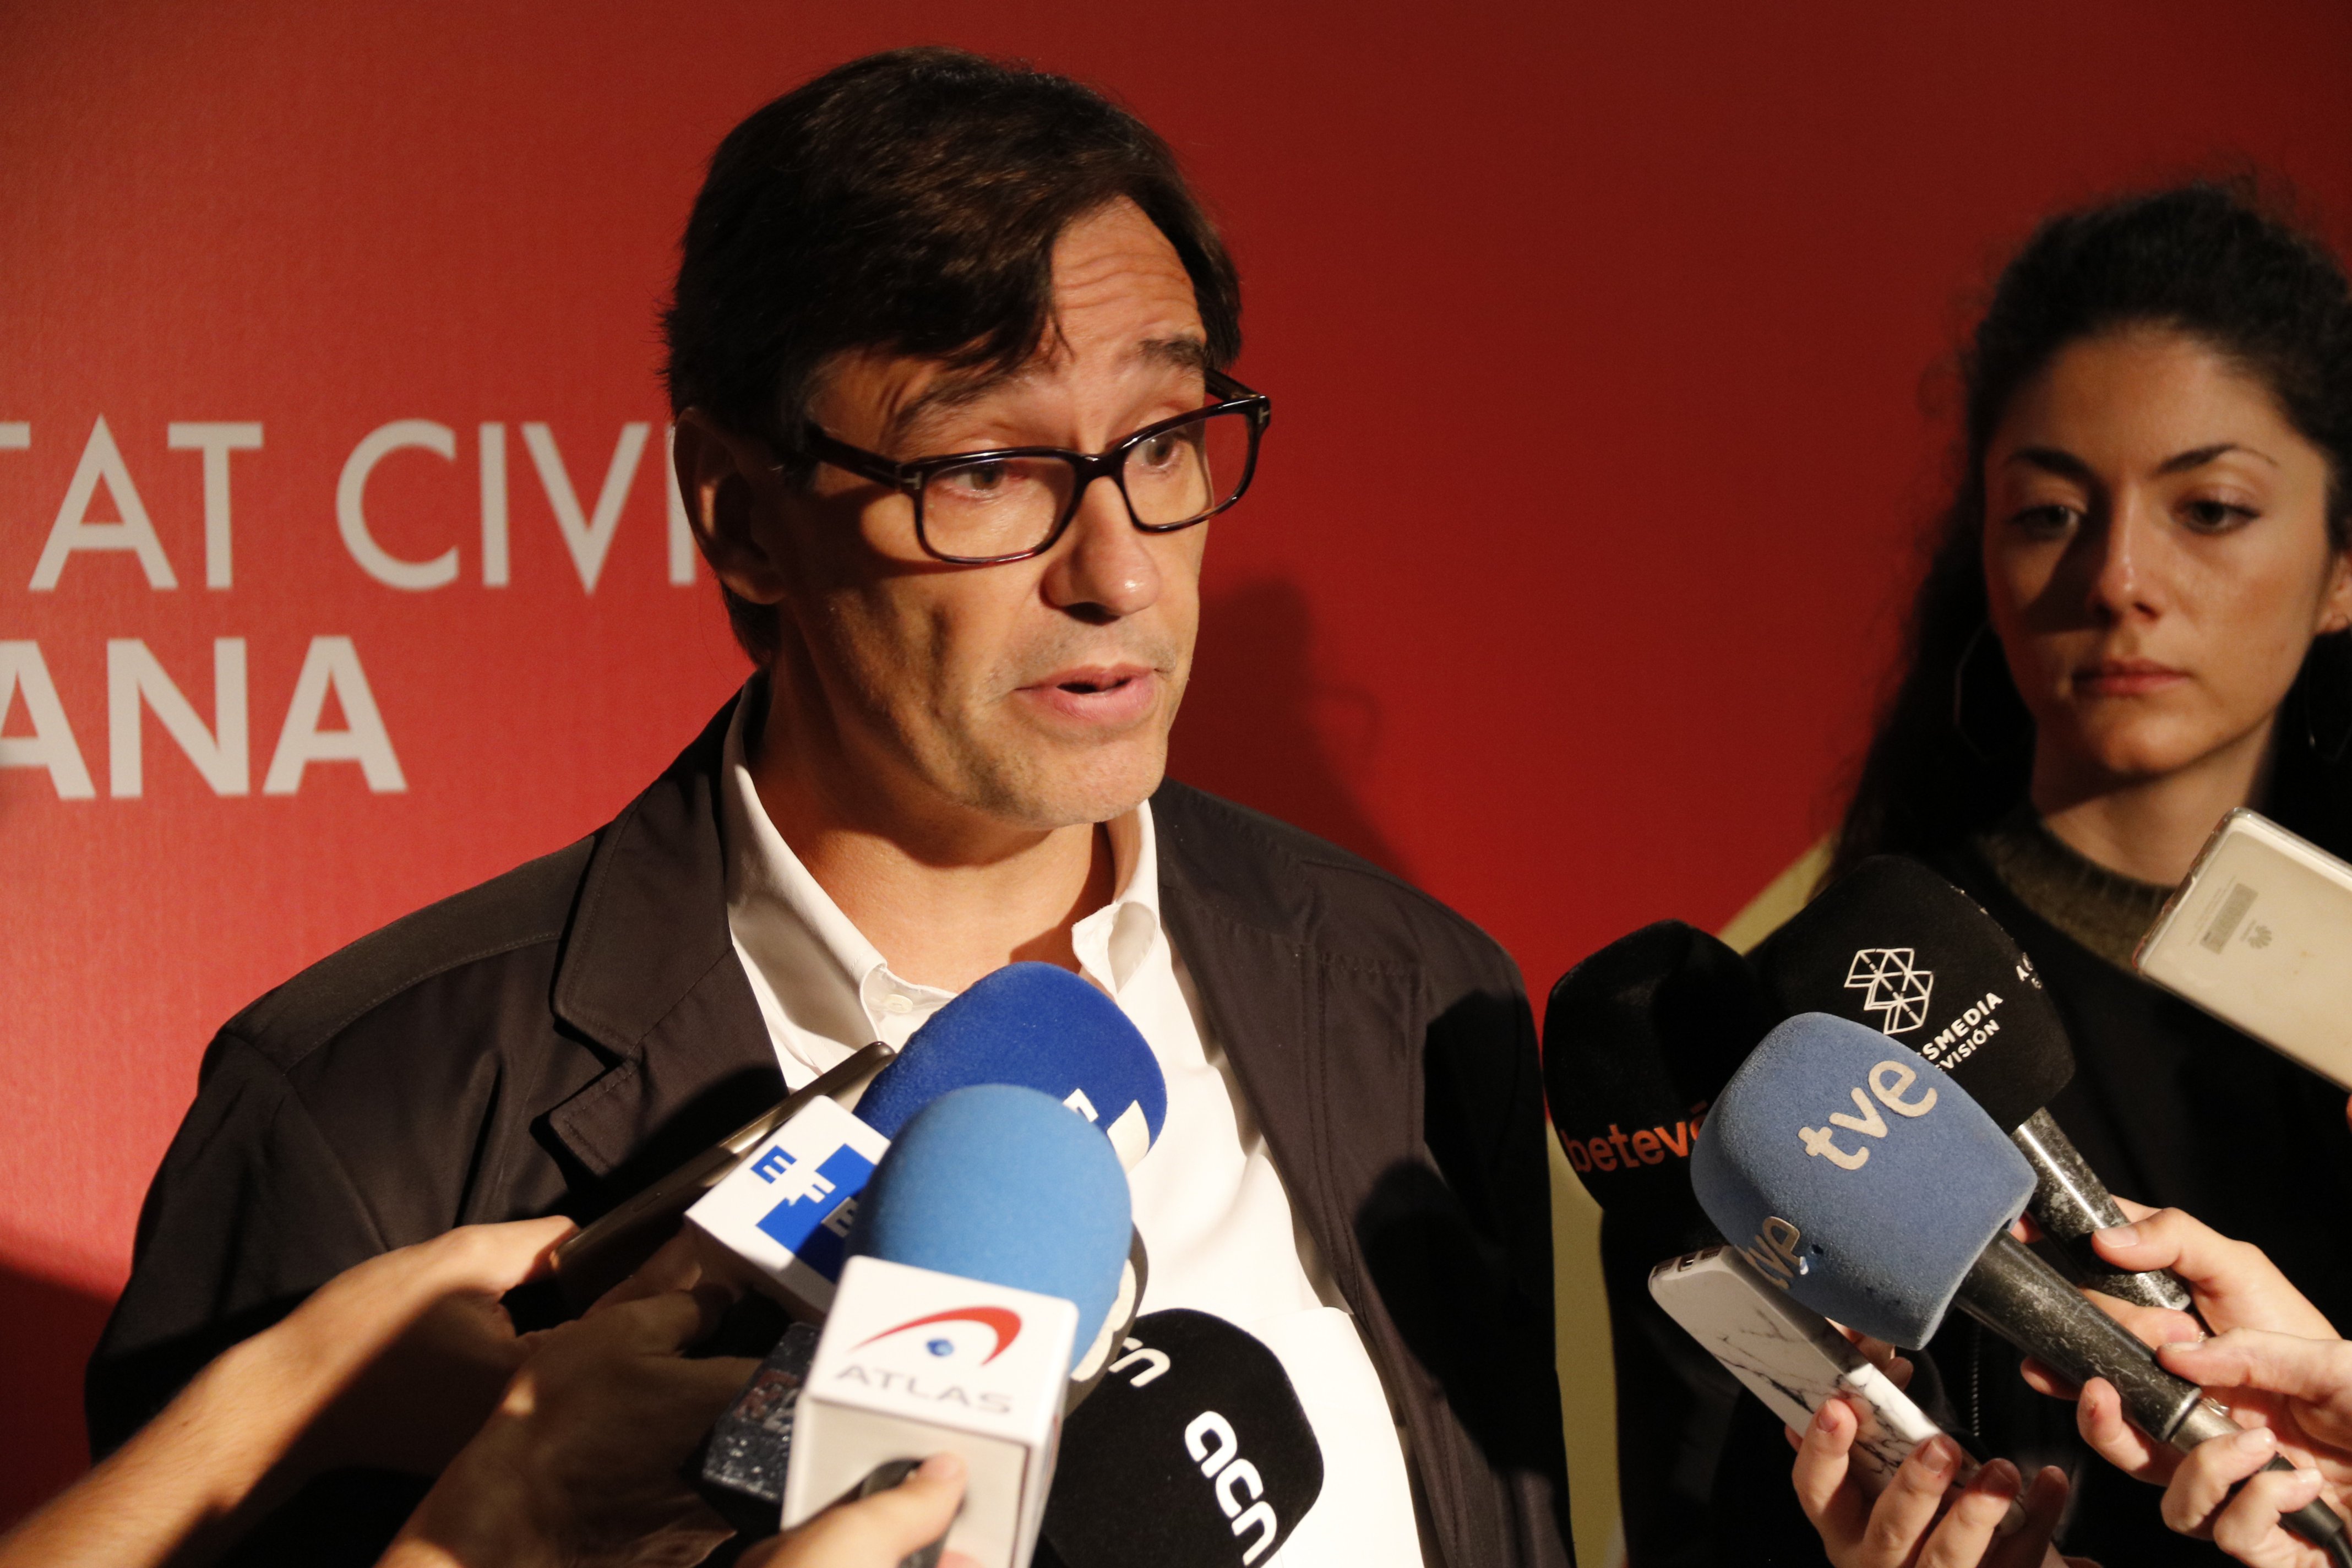 Societat Civil torna a reunir el PSC amb PP i Cs en un acte espanyolista